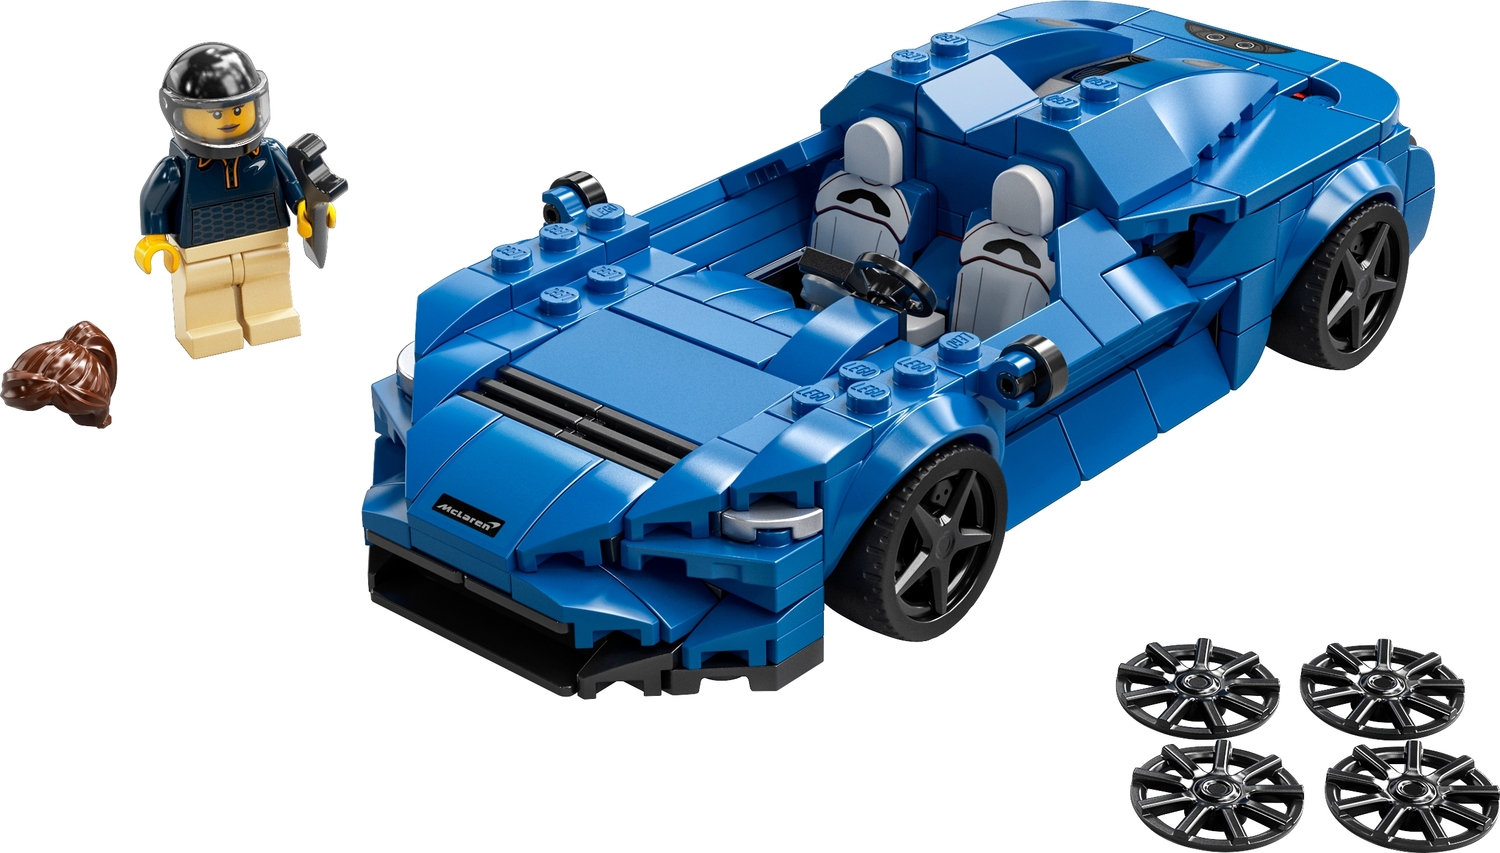 LEGO 76902 Speed Champions: Mclaren Elva